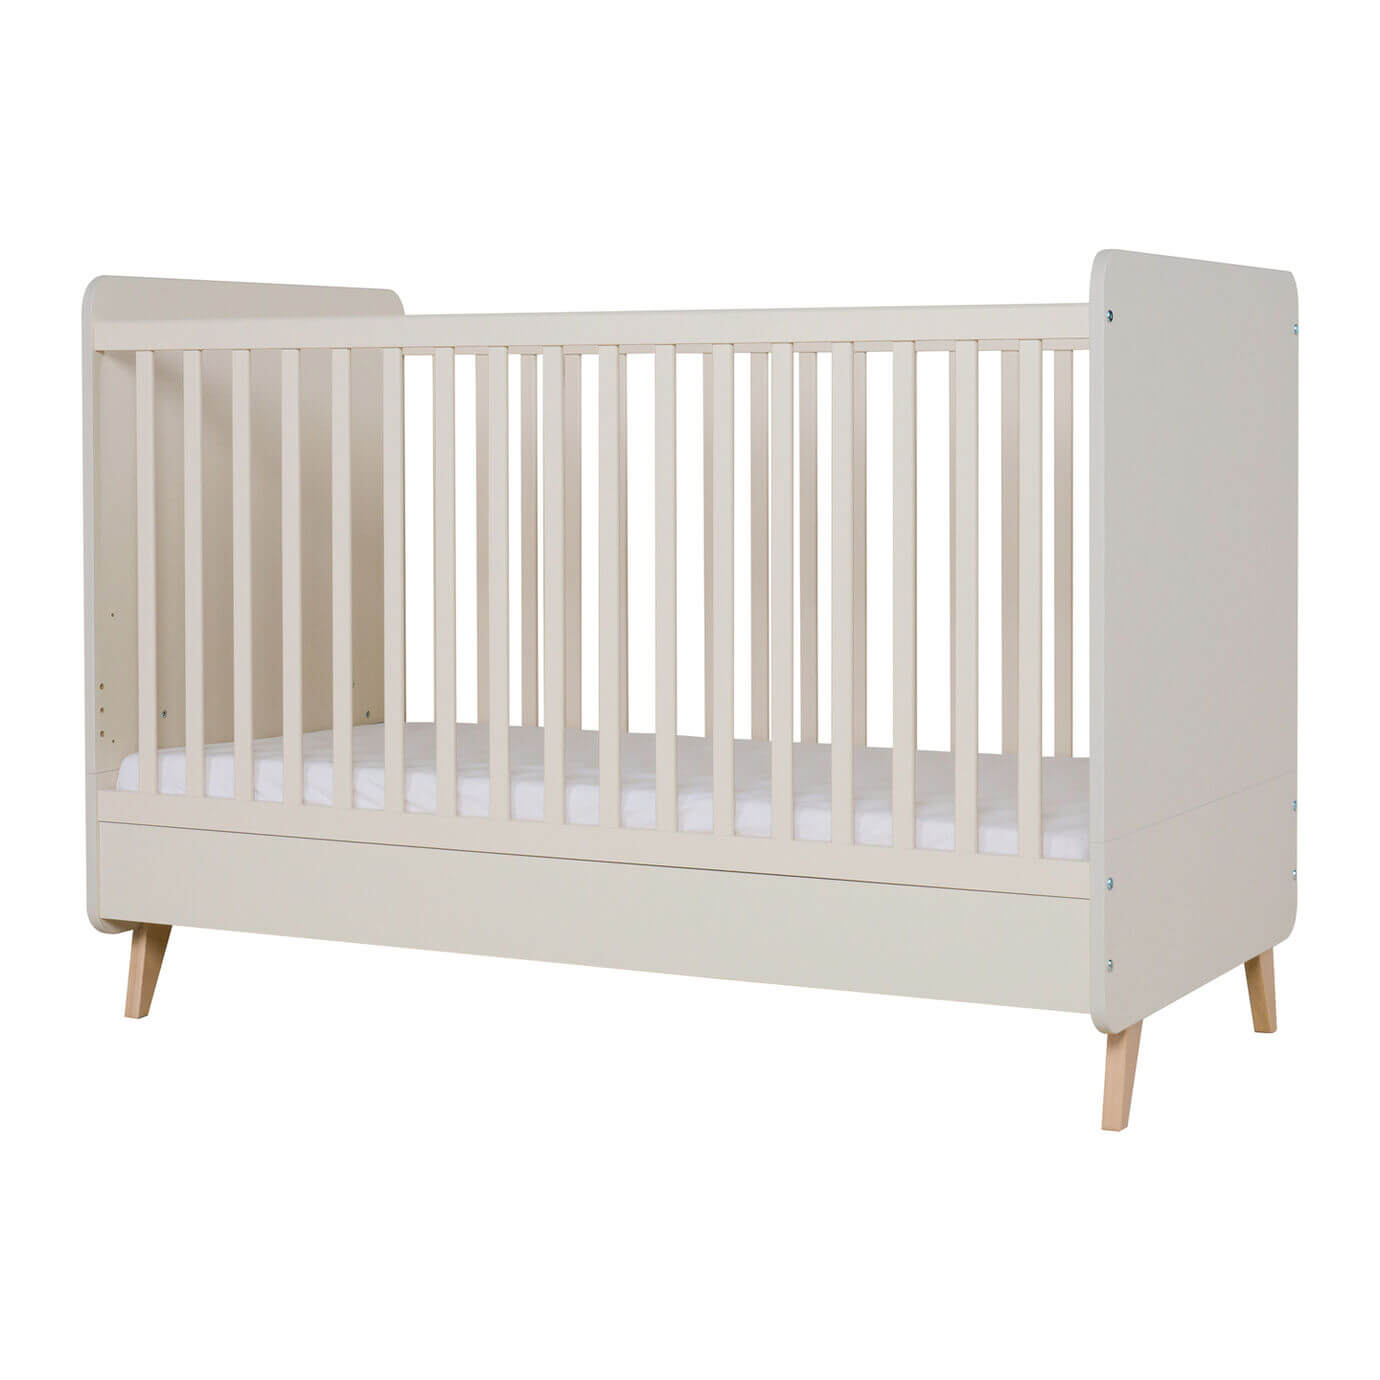 Lit évolutif Loft Argile (140x70cm) Quax - Cribs & Toddler Beds par Quax